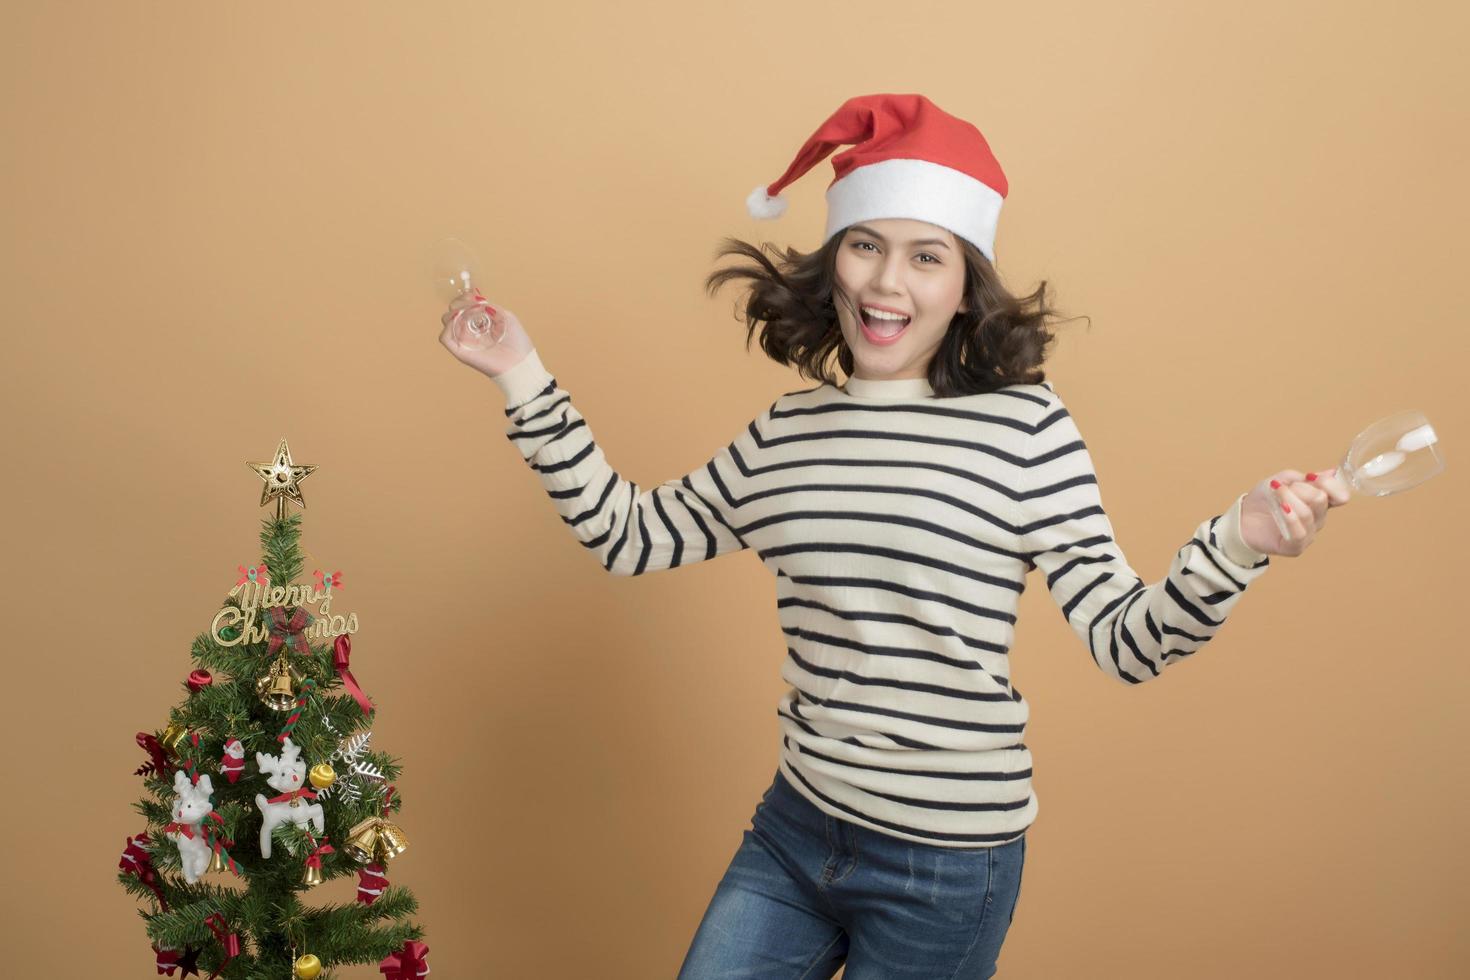 vacker julflicka i santa hatt med lådor på höstbakgrund foto